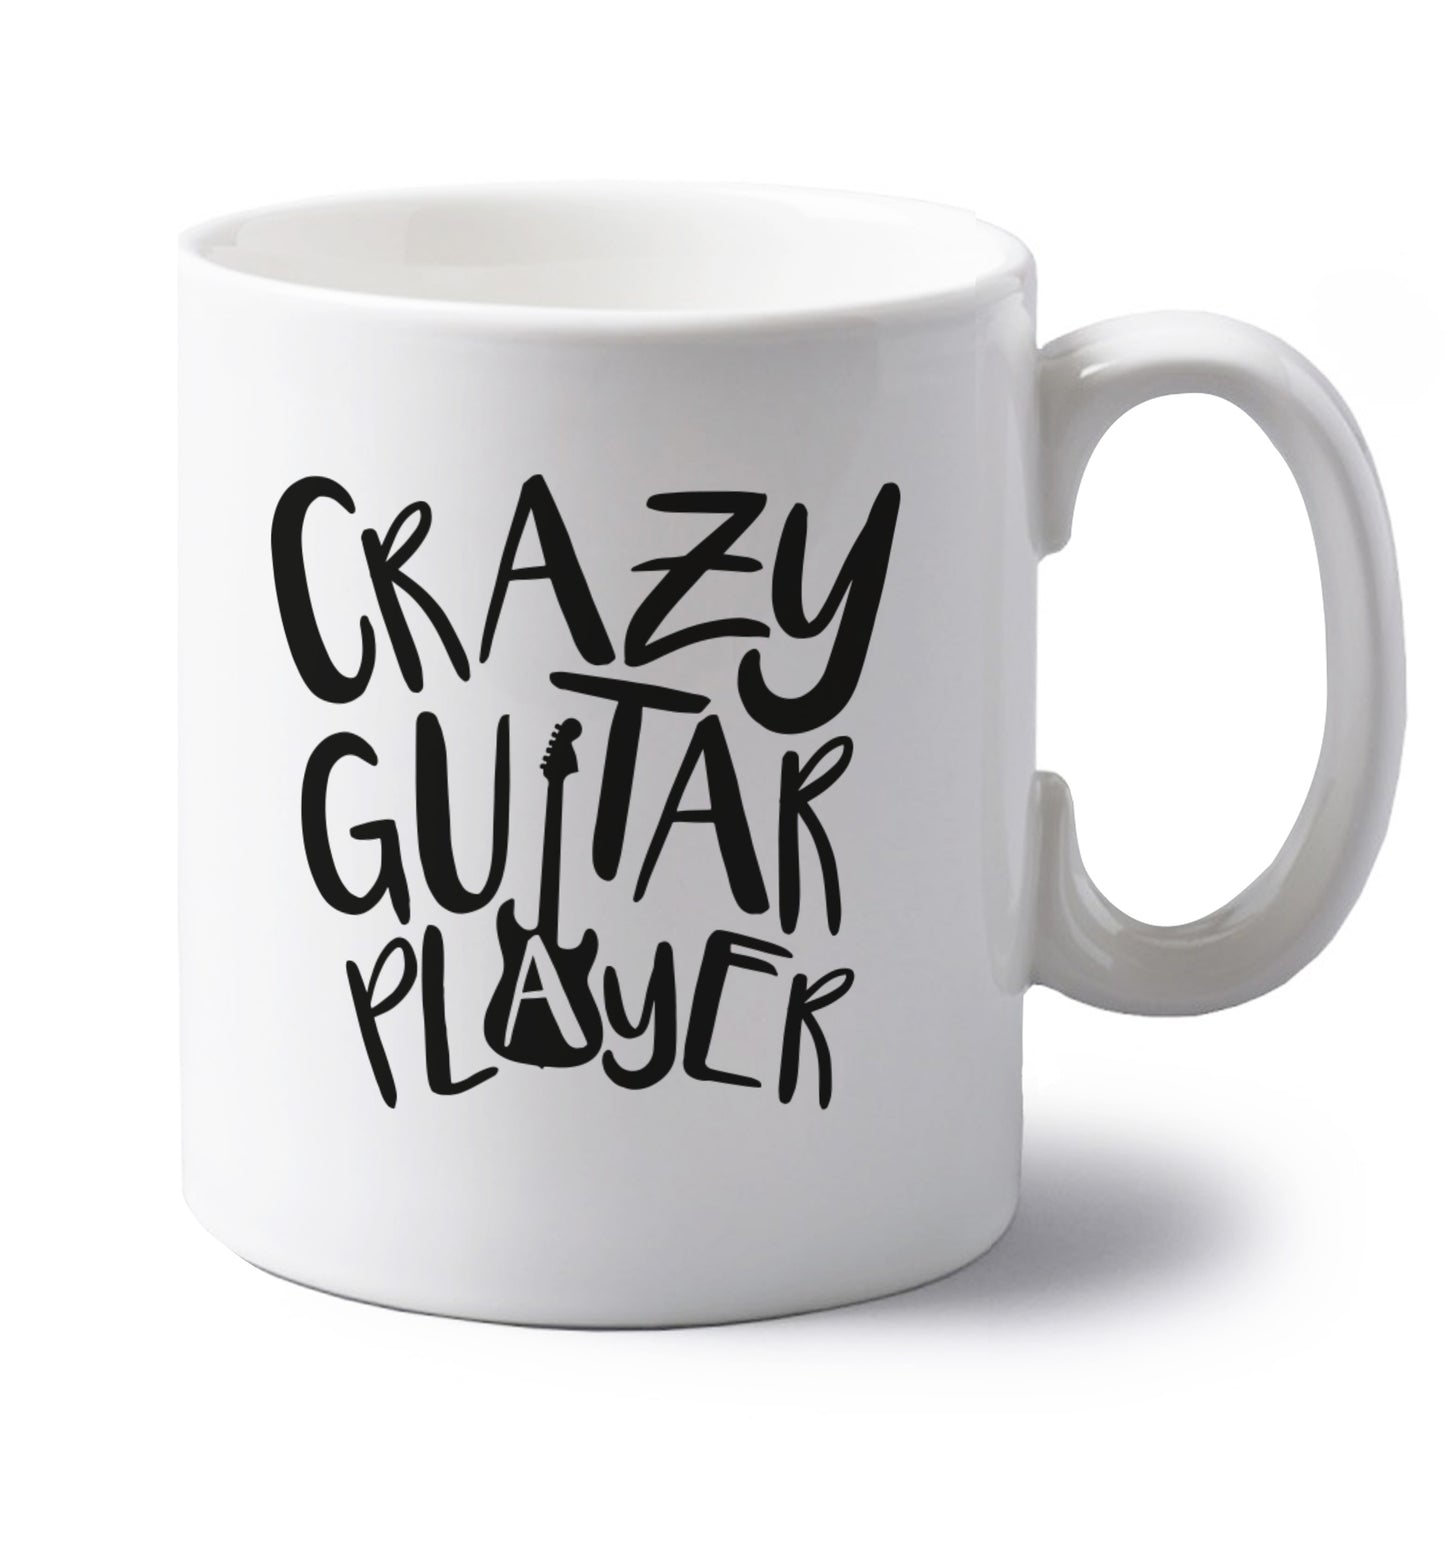 Crazy guitar player left handed white ceramic mug 